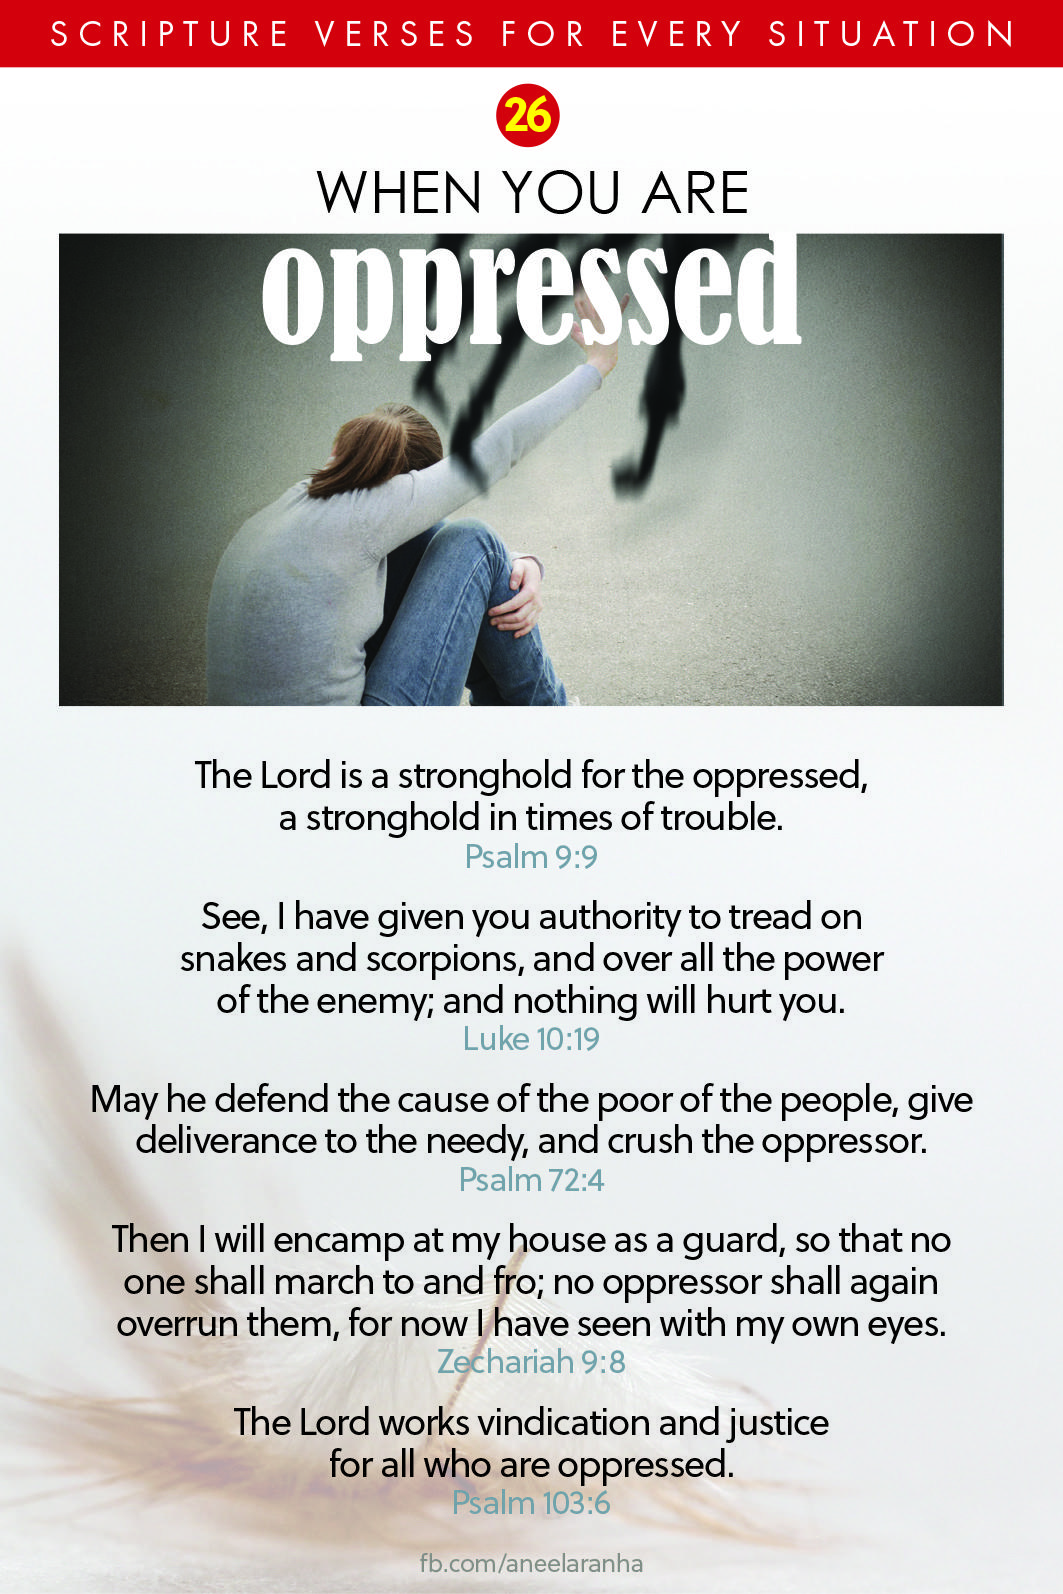 26. Do you feel oppressed?